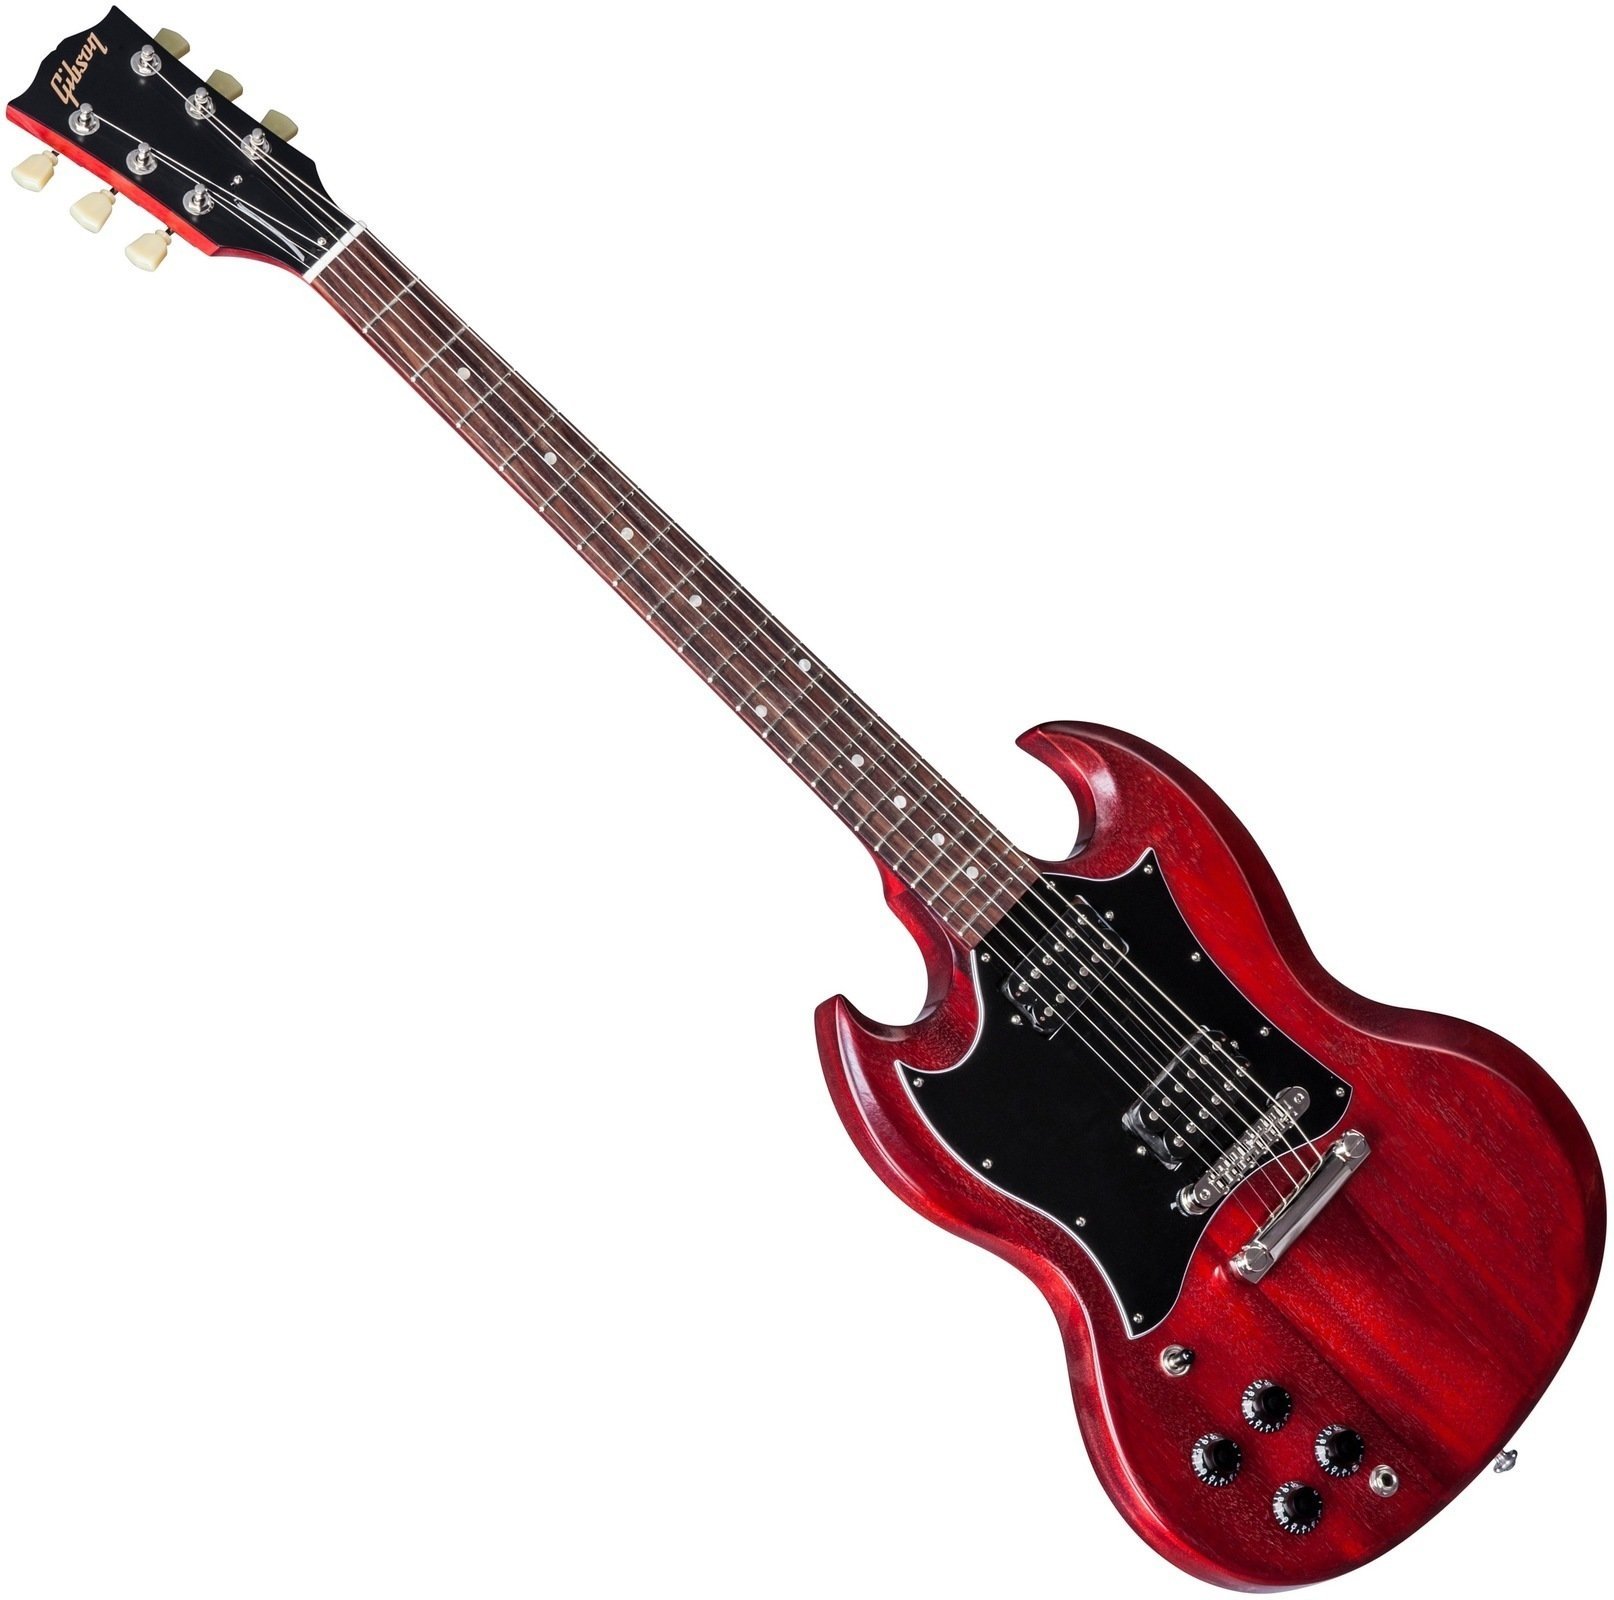 Ηλεκτρική Κιθάρα για Αριστερόχειρες Gibson SG Faded T 2017 Left Handed Worn Cherry